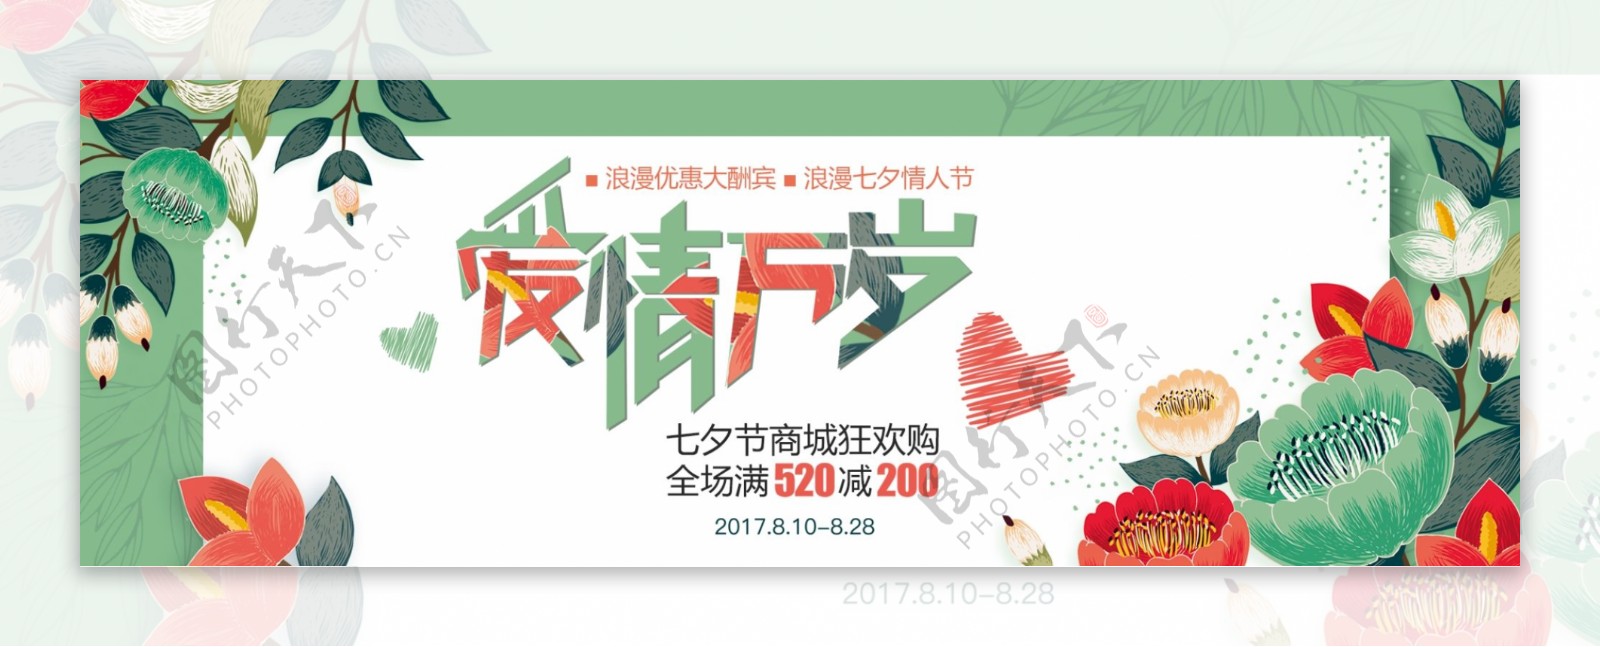 电商淘宝七夕情人节促销海报banner模板设计字体设计